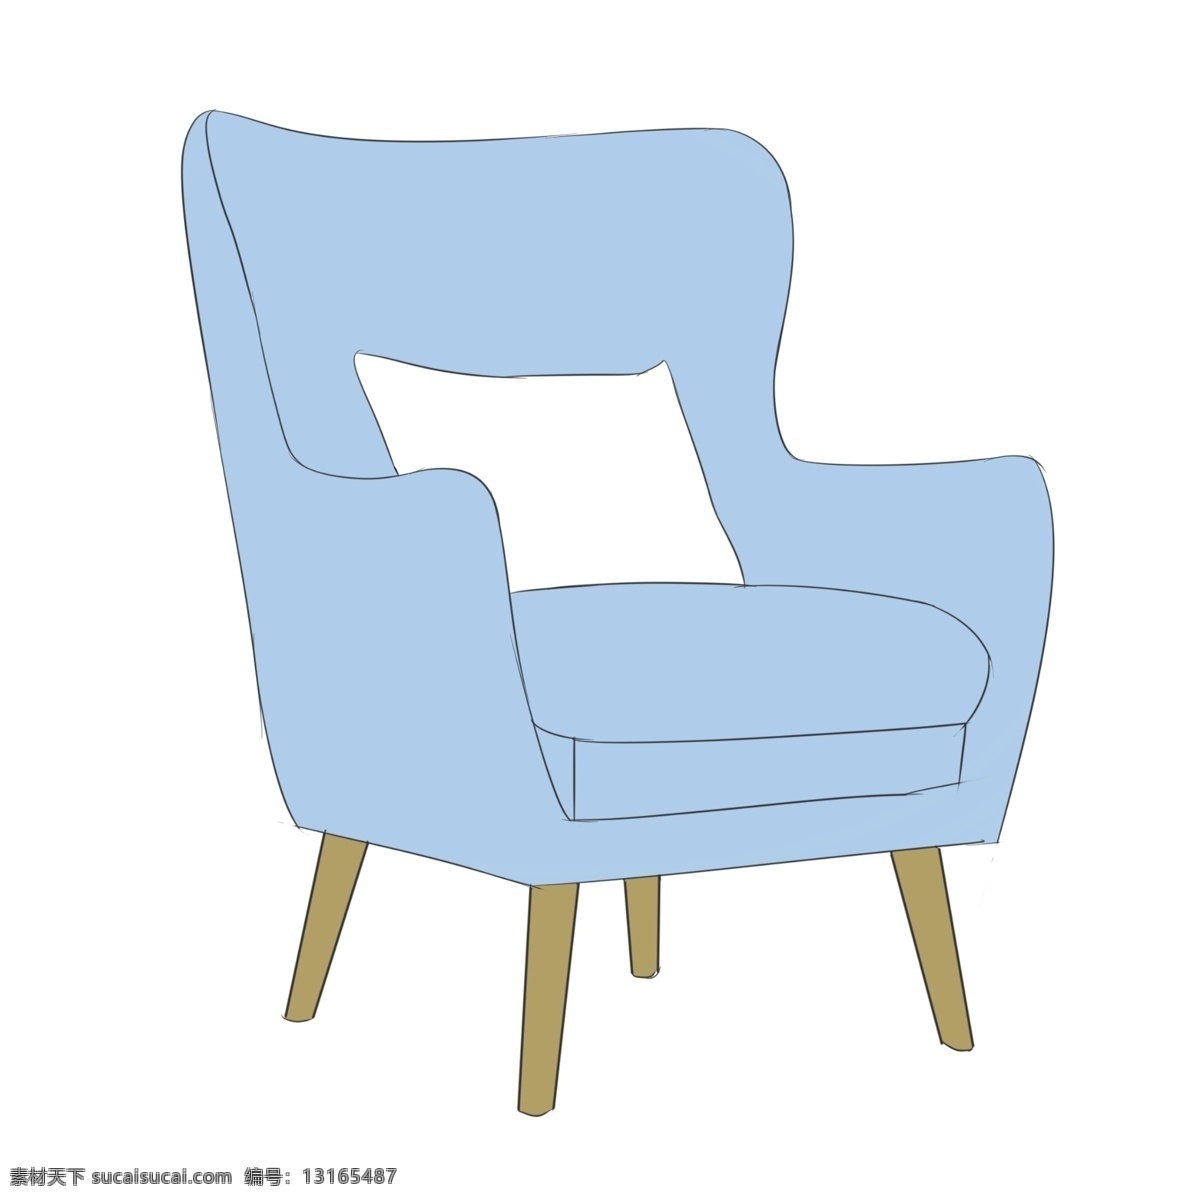 蓝色沙发椅子 沙发 抱枕 座椅